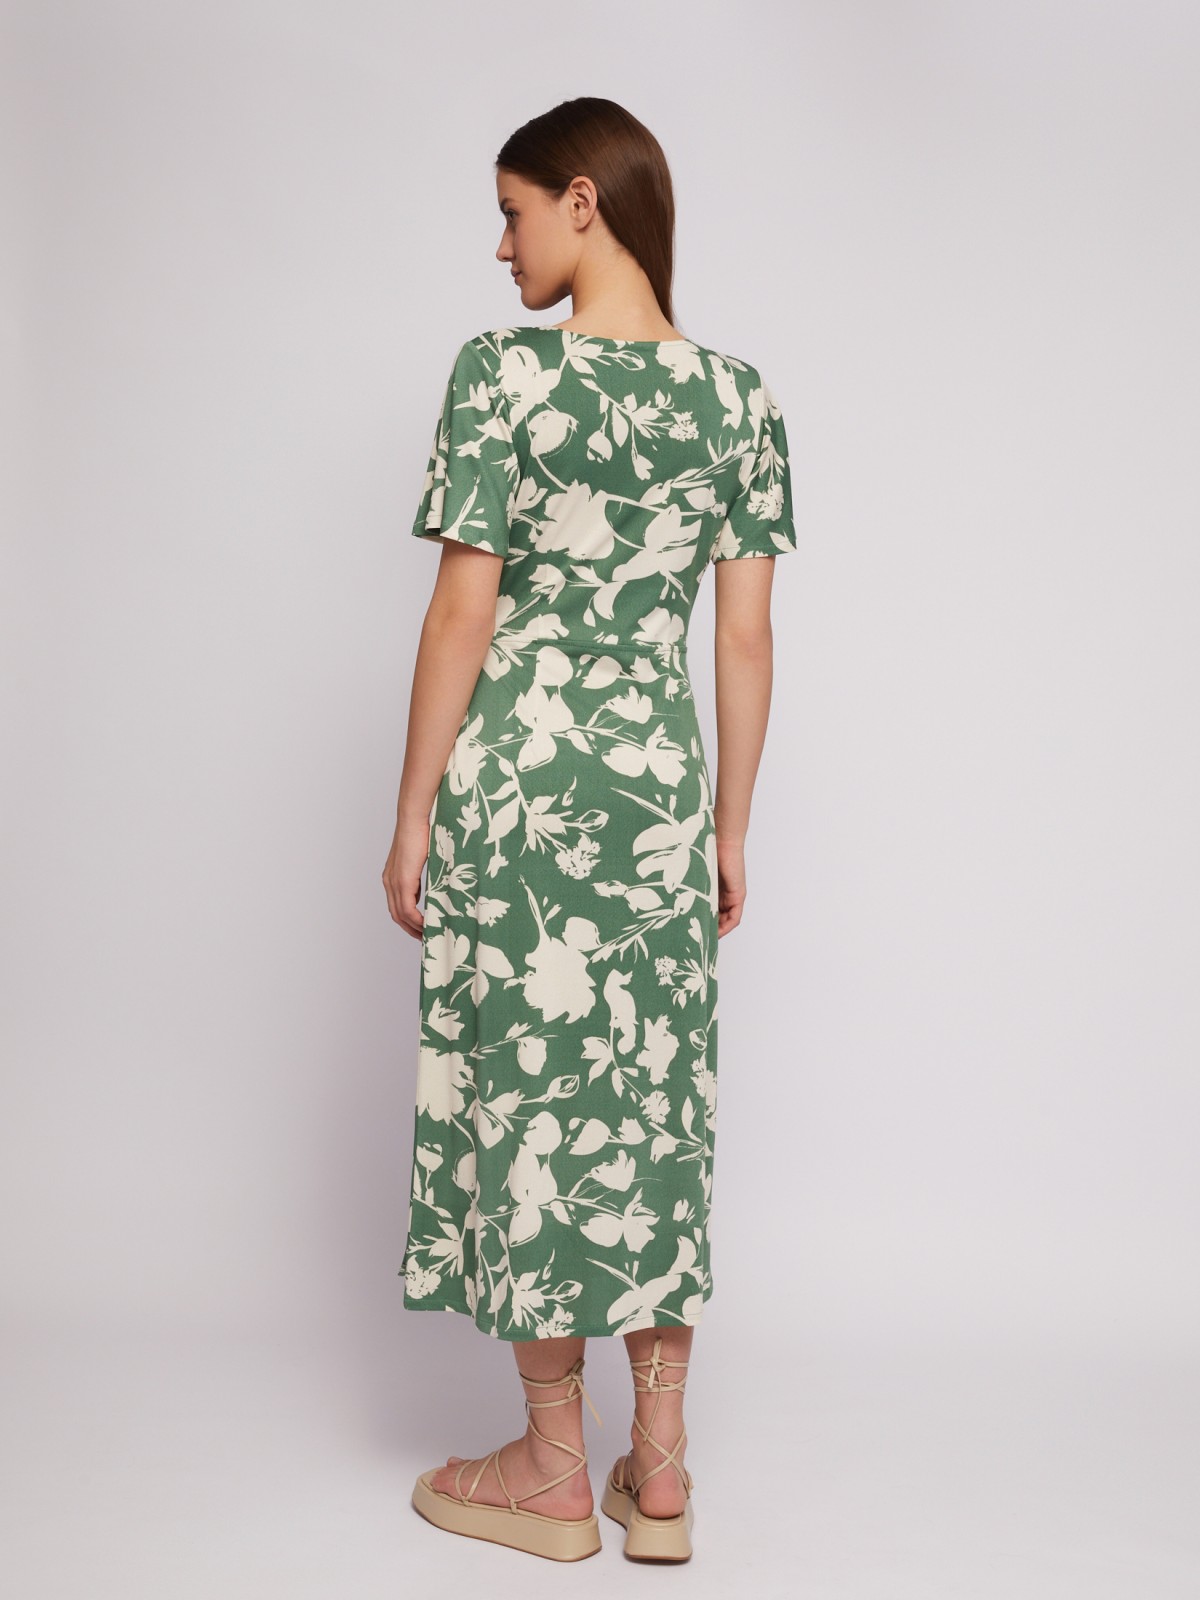 Приталенное платье-халат с запахом и растительным принтом zolla N24218159111, цвет зеленый, размер M - фото 6